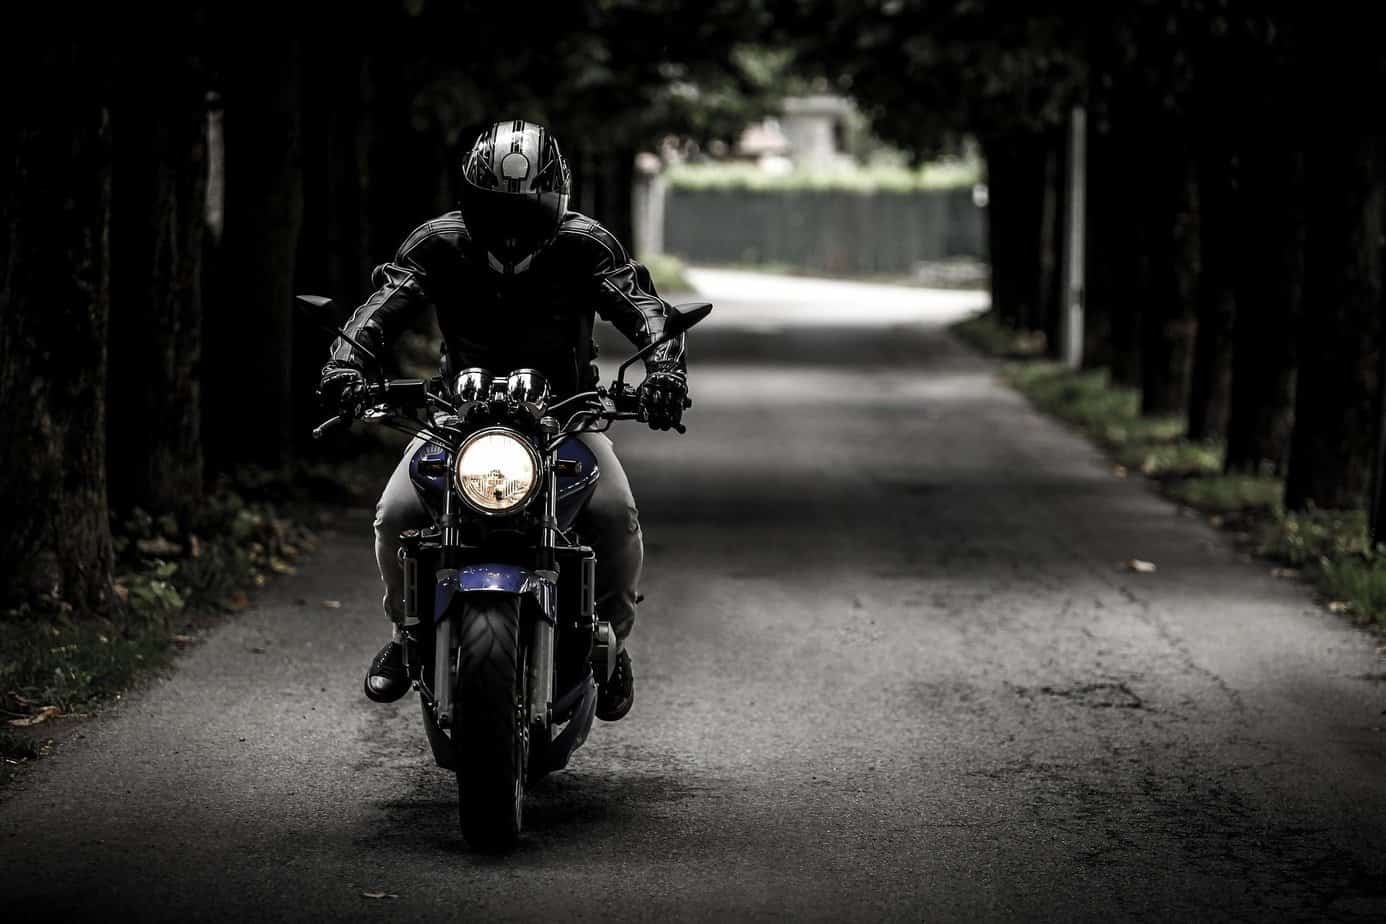 Ubezpieczenie motocykla – co warto o nim wiedzieć?